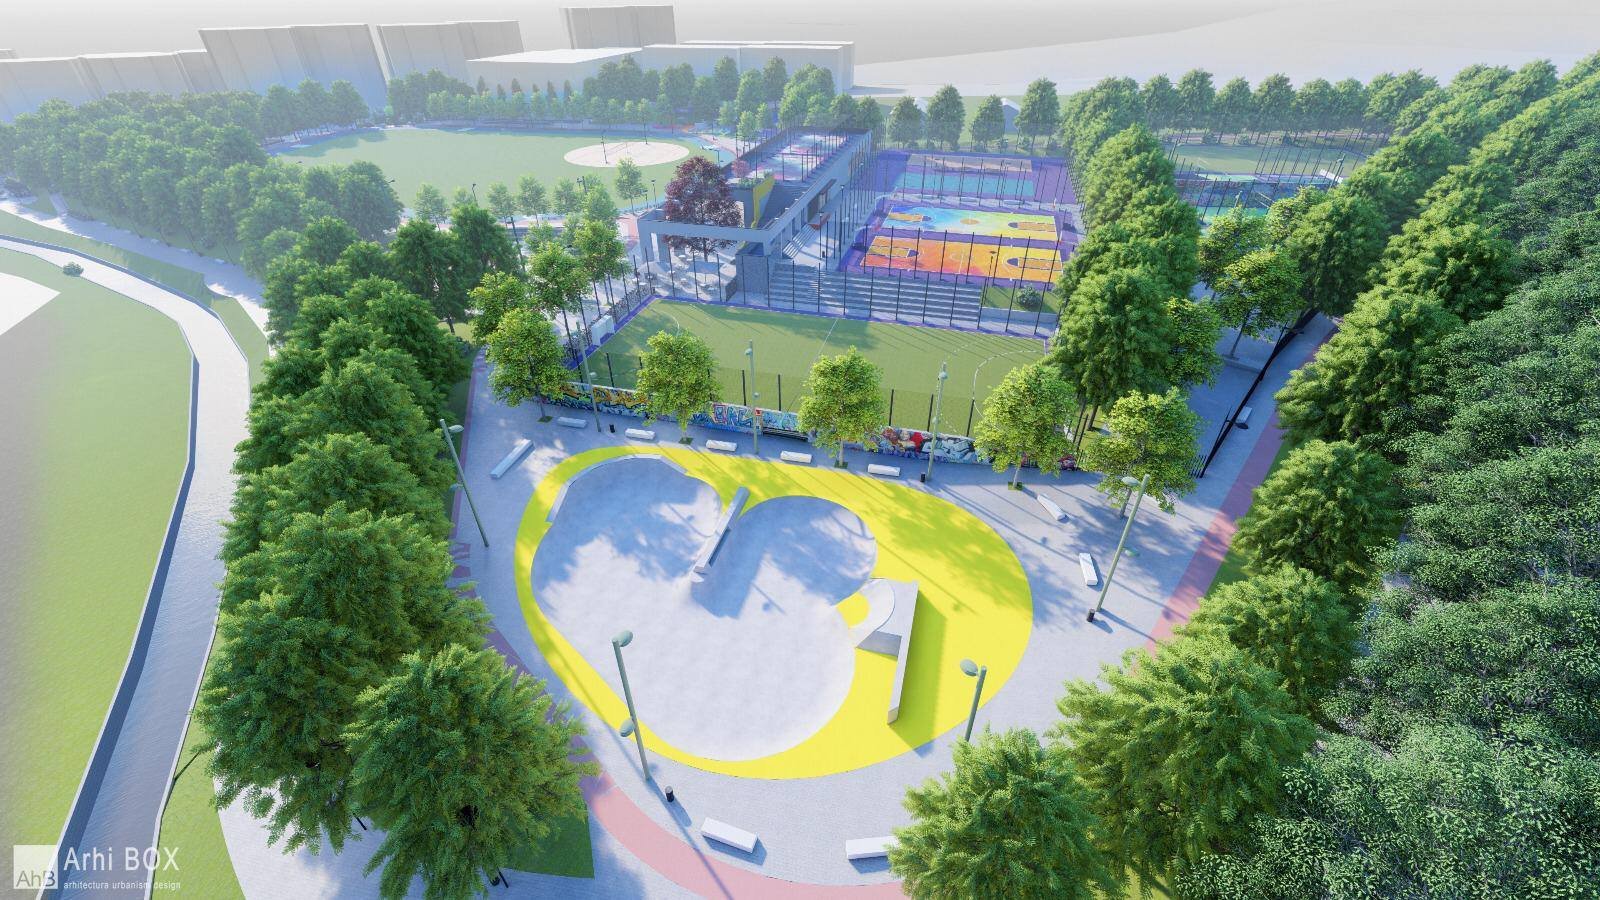  Bază sportivă uriaşă, cu acces gratuit, inaugurată la Cluj-Napoca de Primărie